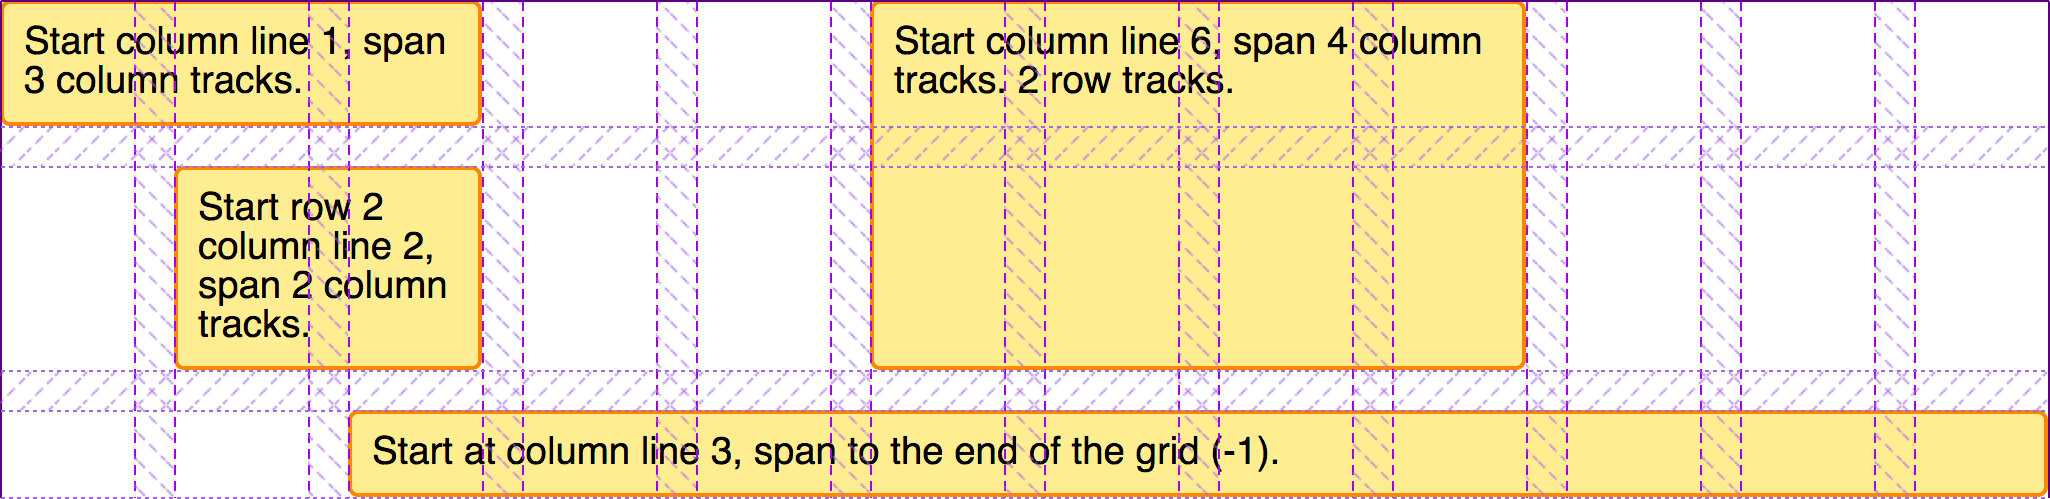 Indication des objets placés sur la grille avec la mise en évidence des pistes de la grille.